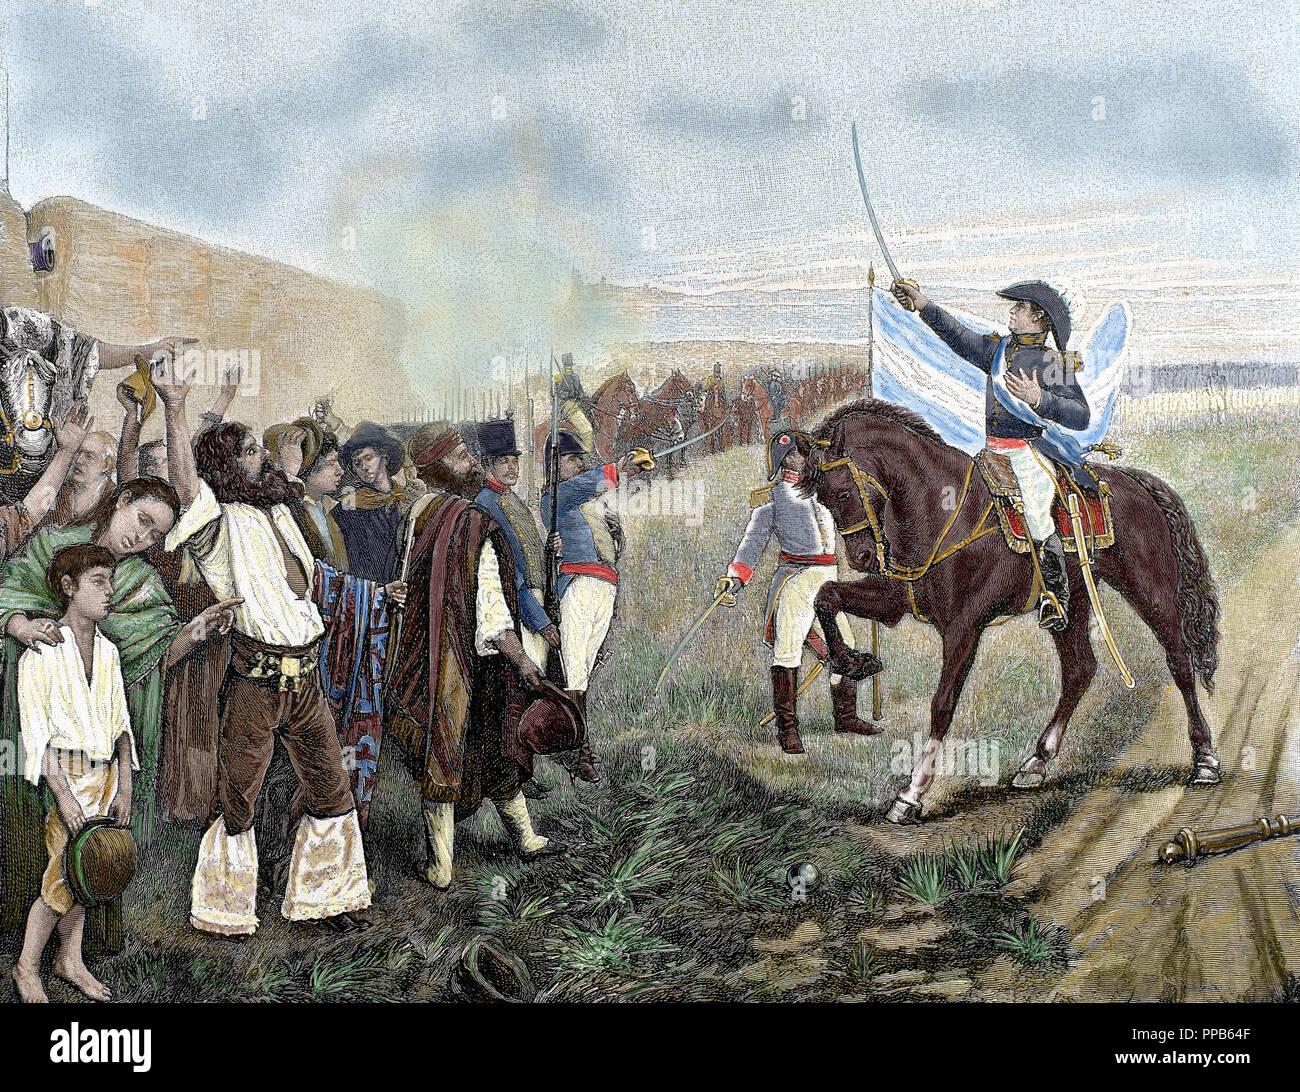 Unabhängigkeit von Argentinien. Belgrano, Manuel (1770-1820). Argentinische Militärs. Die erste Flagge von Argentinien in die Revolutionäre Armee von General Belgrano am 27. Februar 1812. Farbige Gravur. Stockfoto